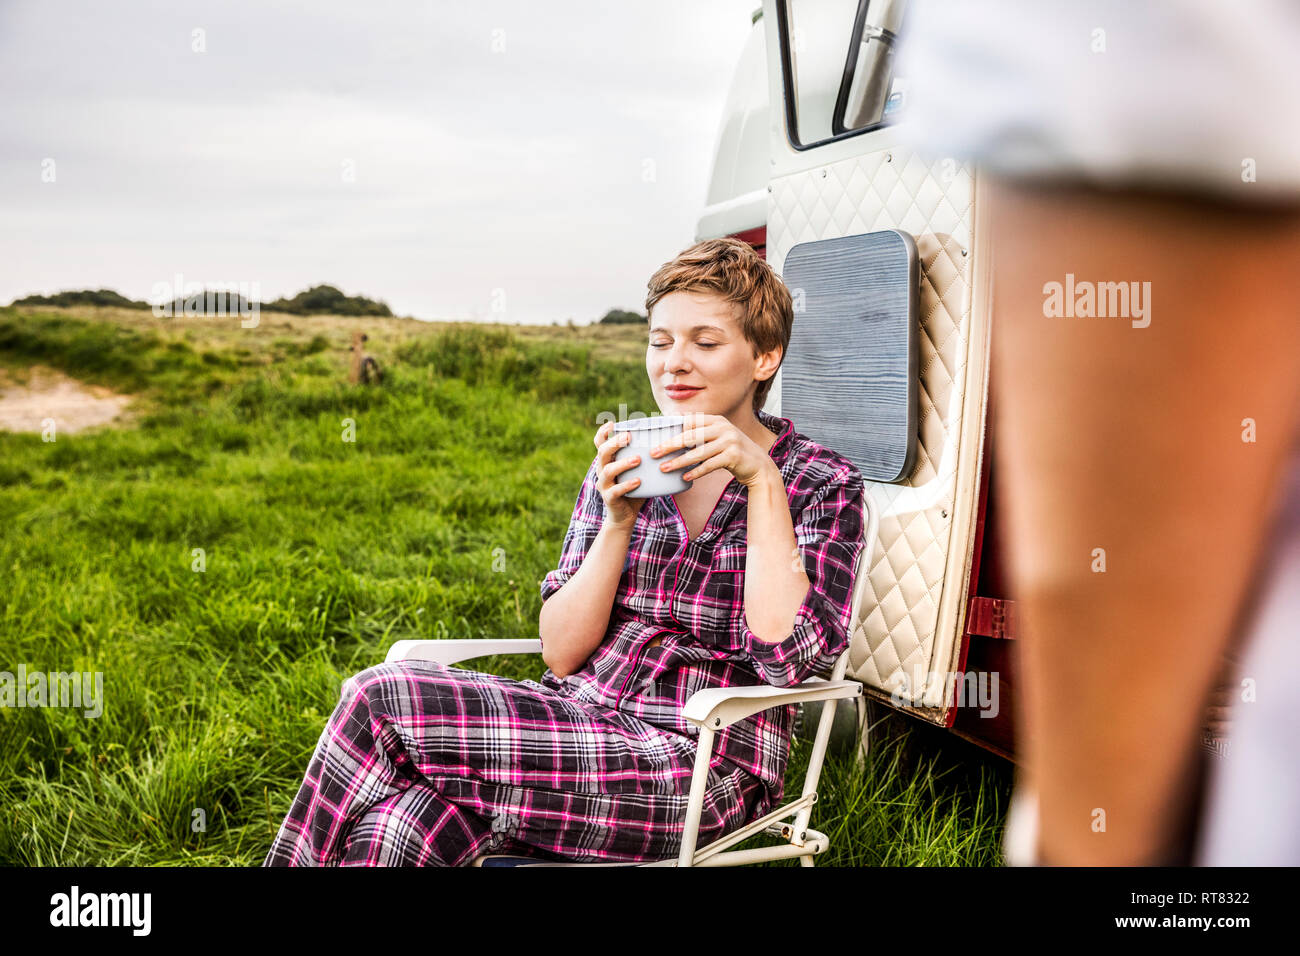 La donna in pigiama gustando un caffè a un furgone nel paesaggio rurale Foto Stock